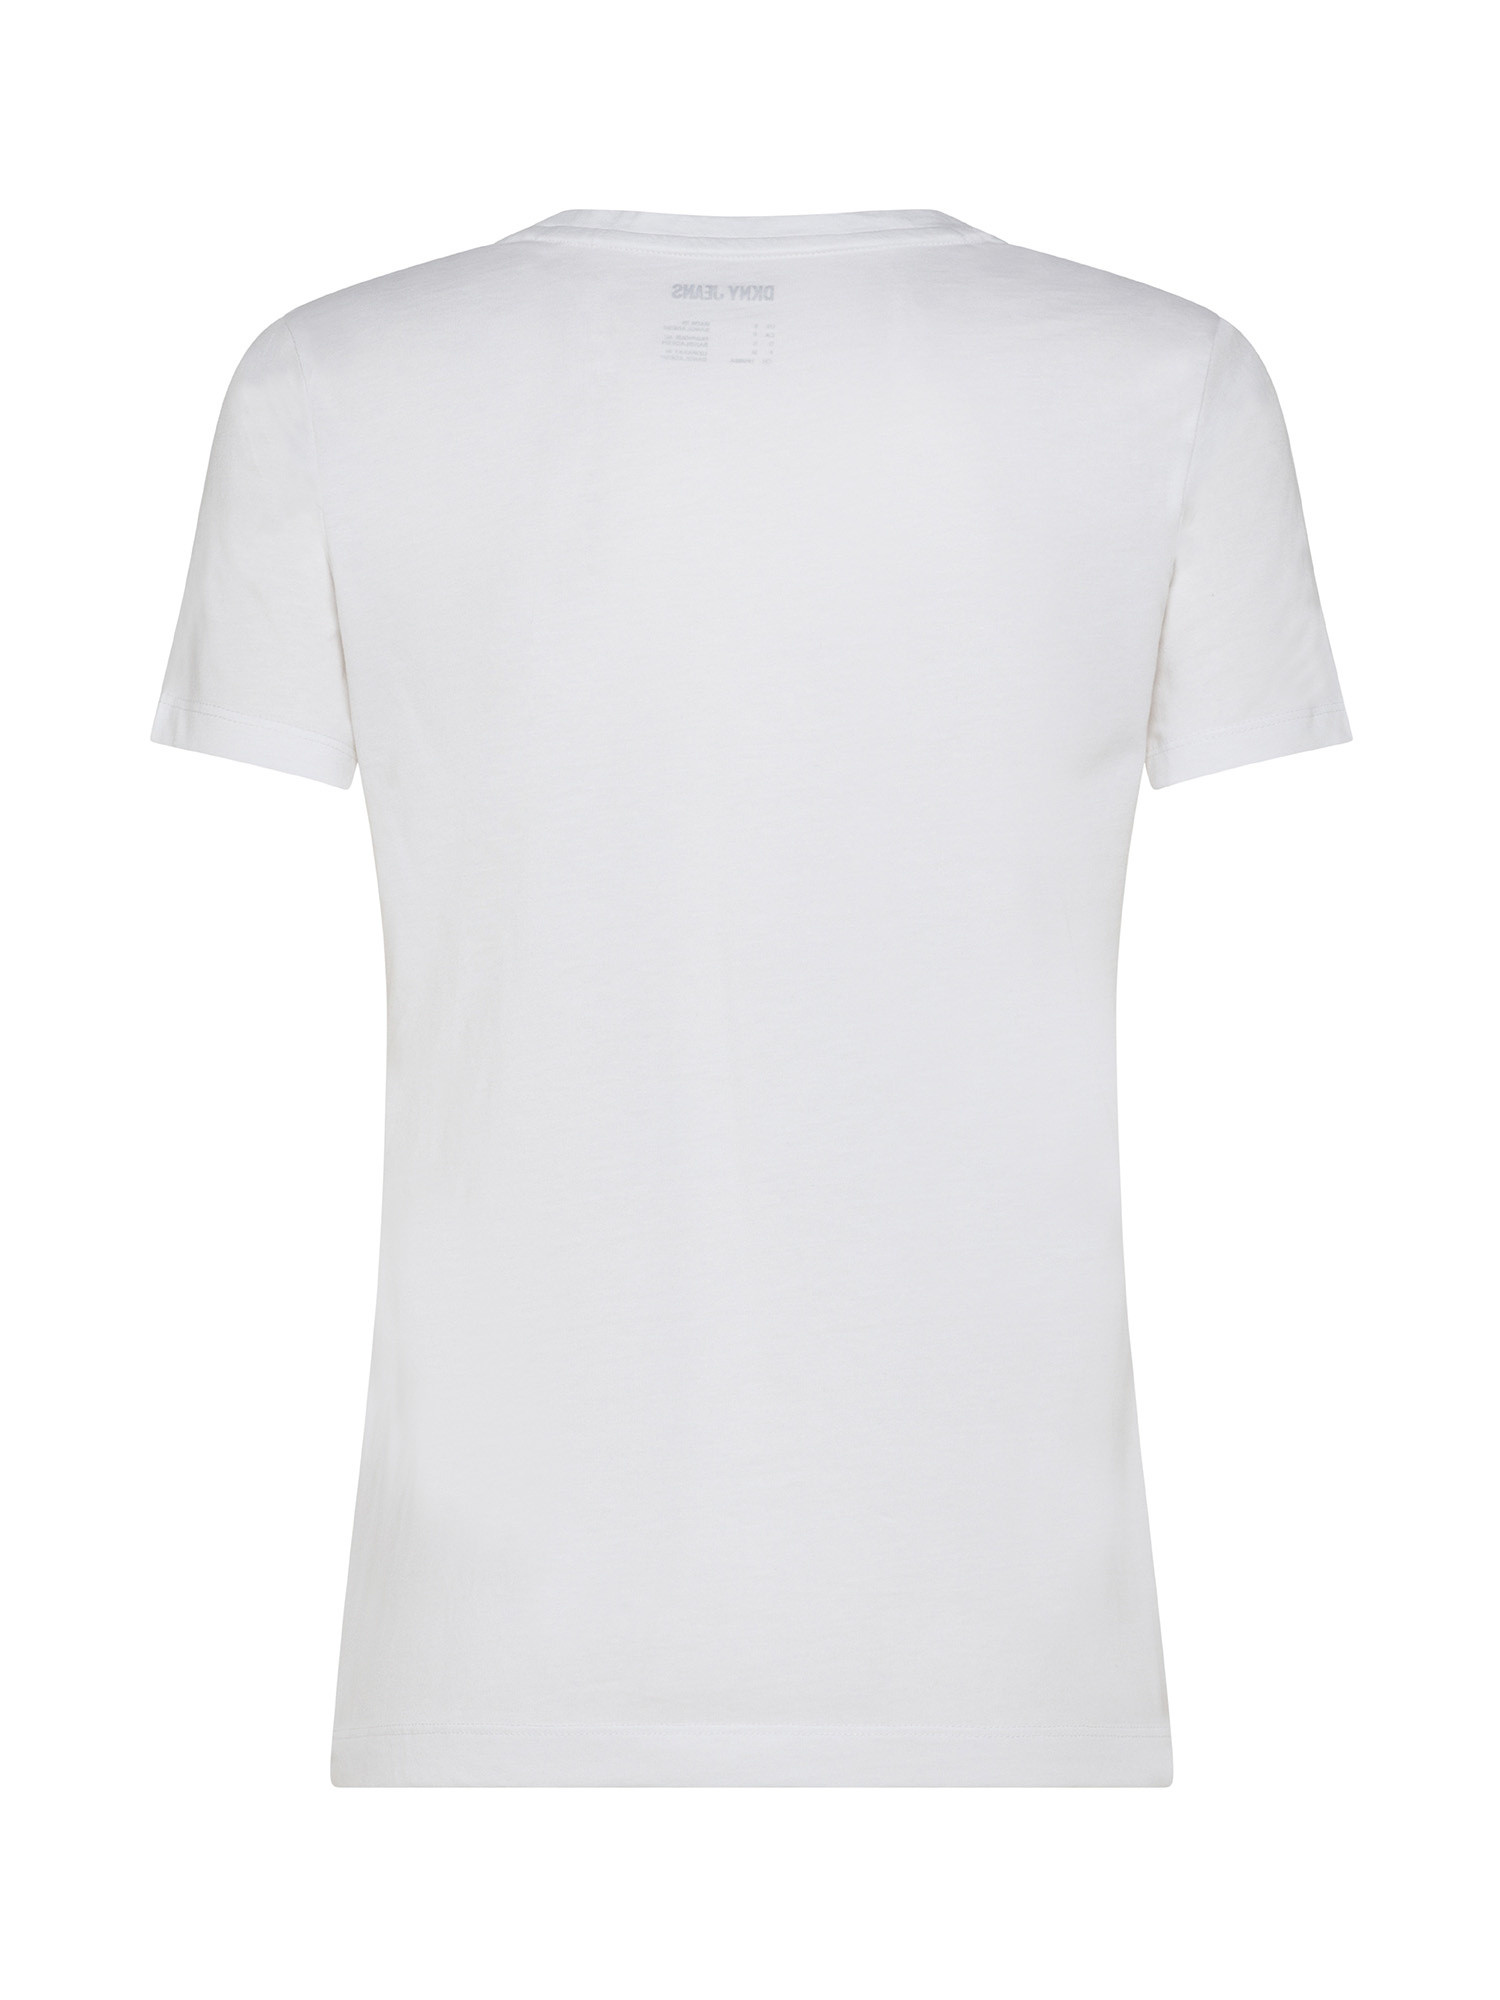 DKNY - Logo T-Shirt, White, large image number 1